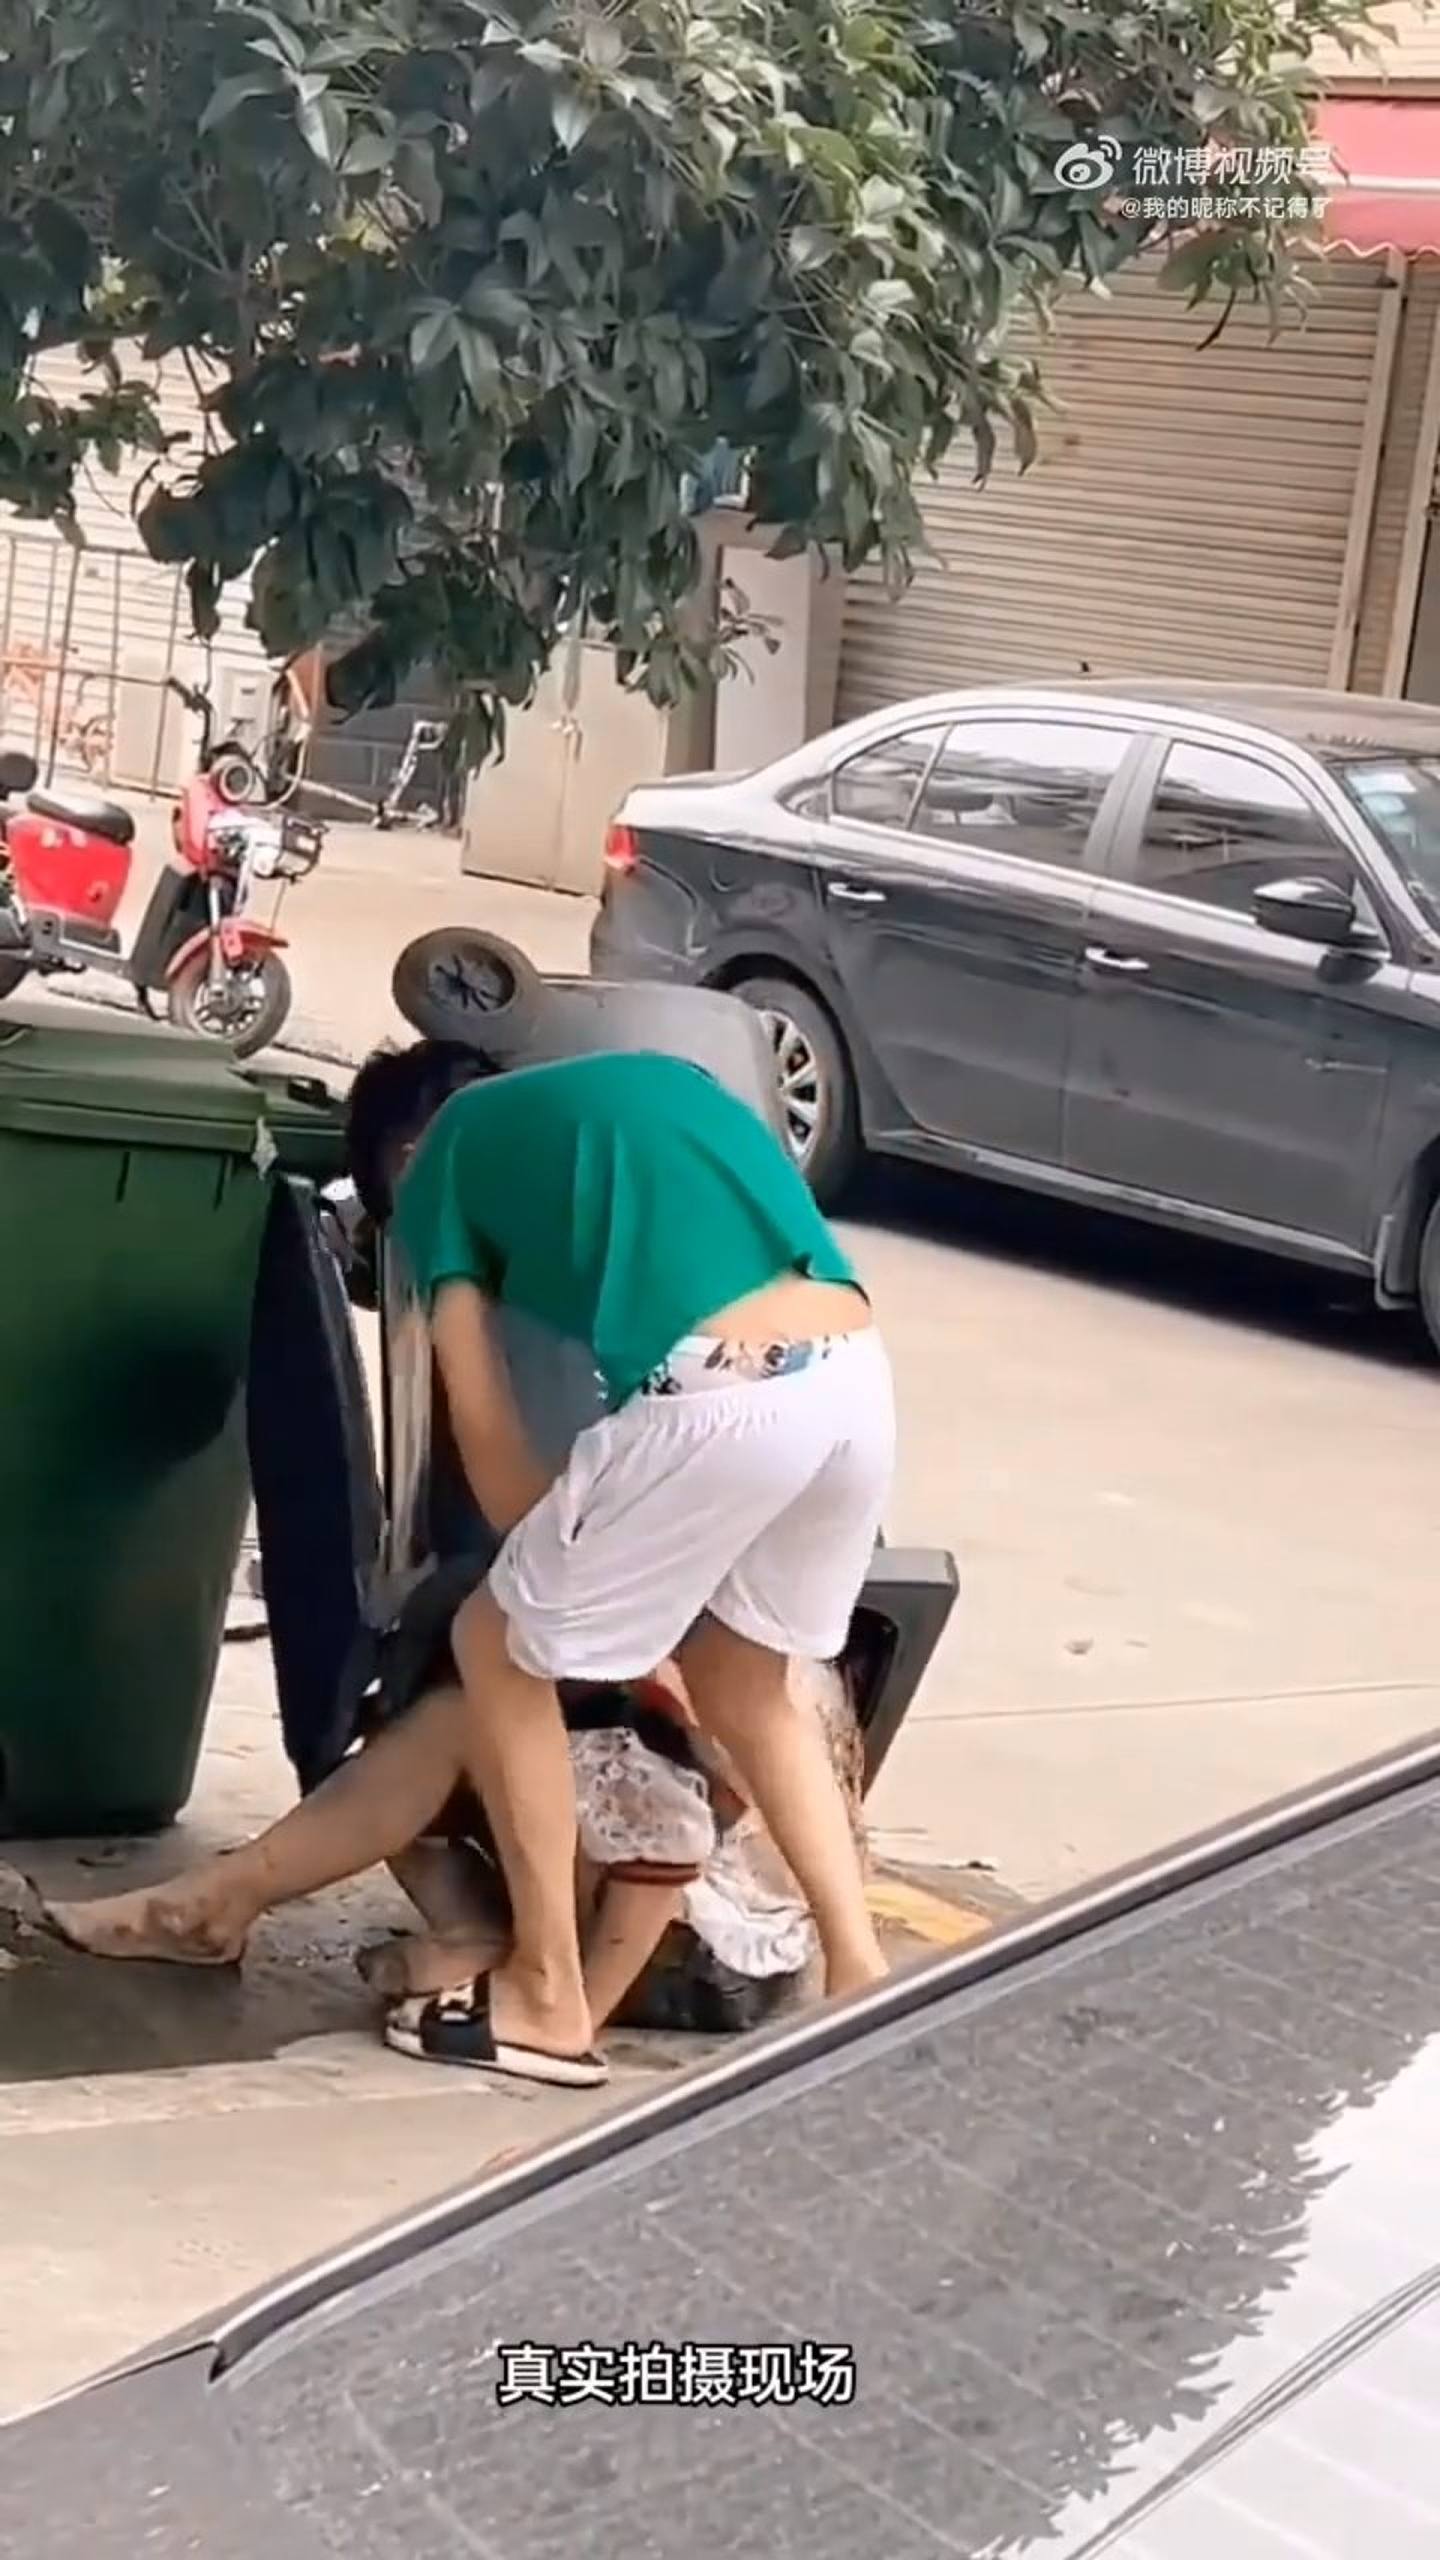 内地网络近日疯传段男子当街殴打女子影片，女子一度被强塞入垃圾桶。 （影片截图）